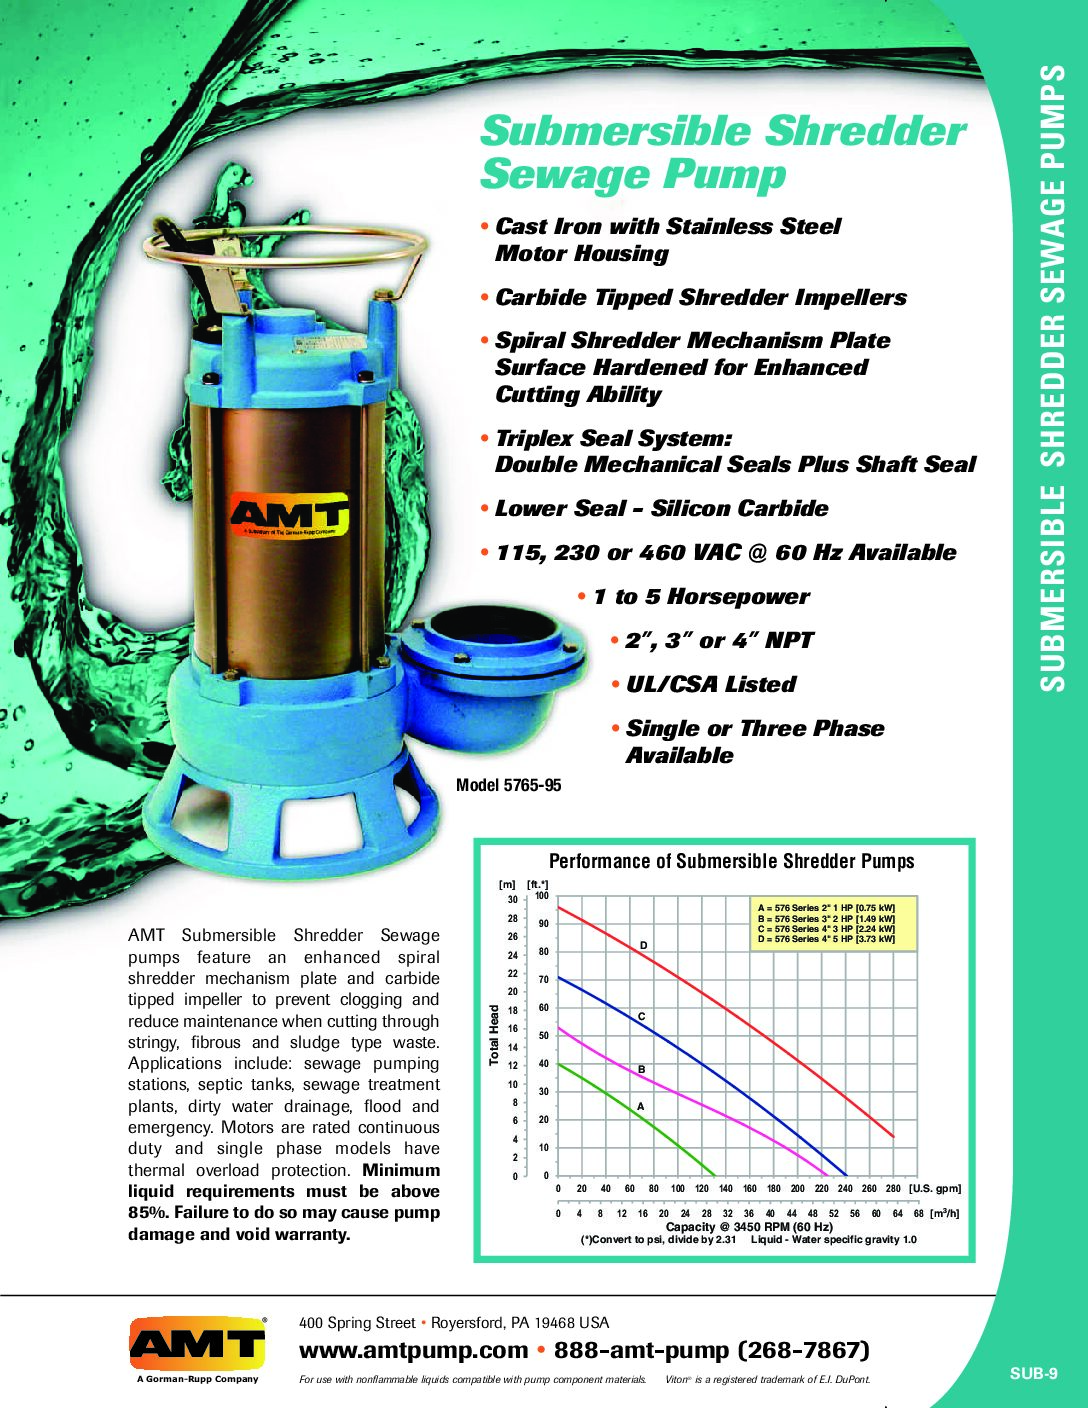 AMT Submersible Shredder Sewage Pumps